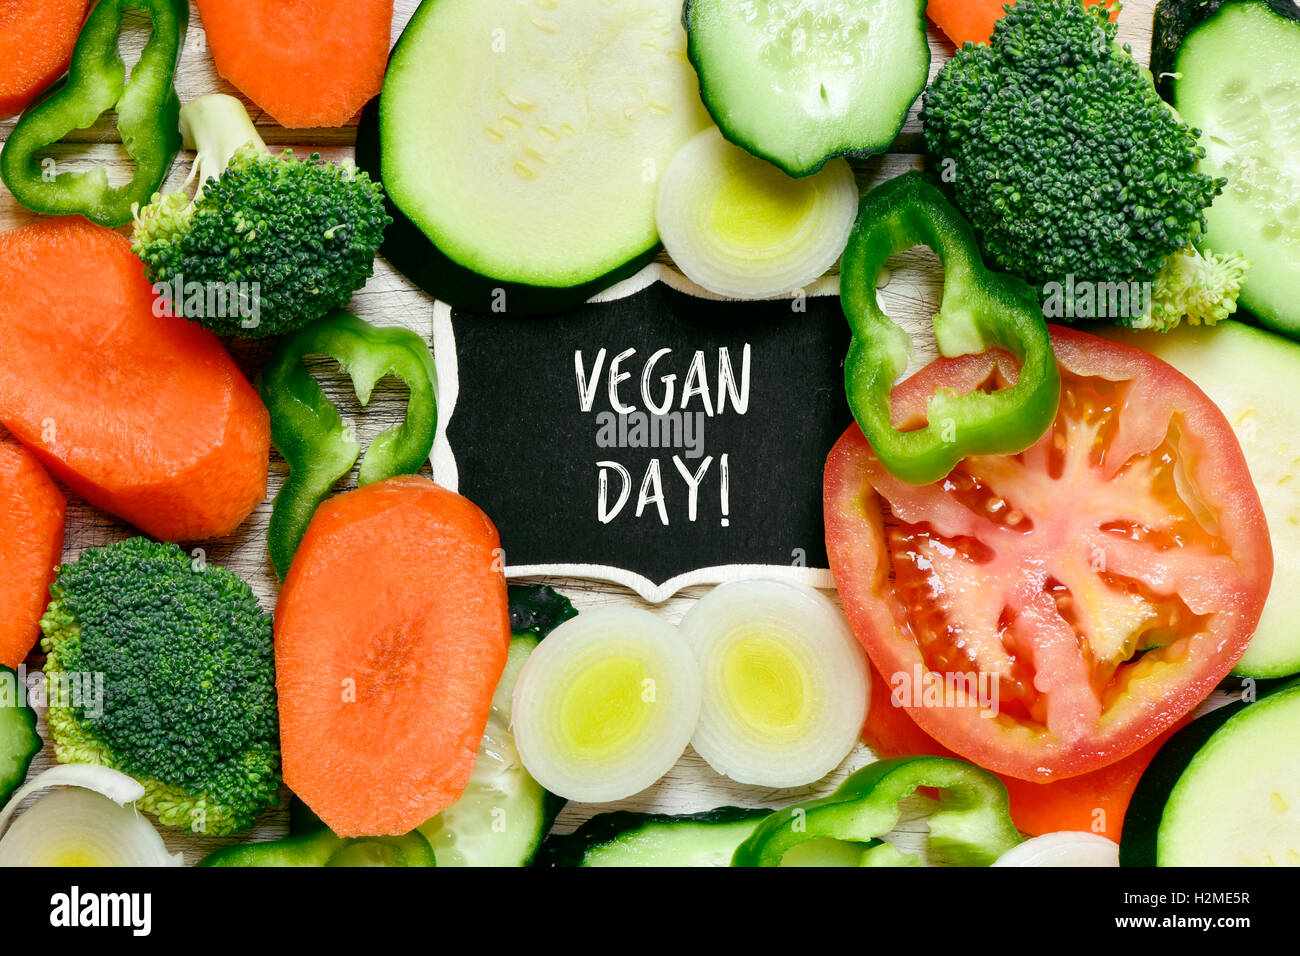 Capture d'un grand angle d'une surface en bois plein de différents légumes crus hachés et un tableau avec le texte écrit en vegan day Banque D'Images